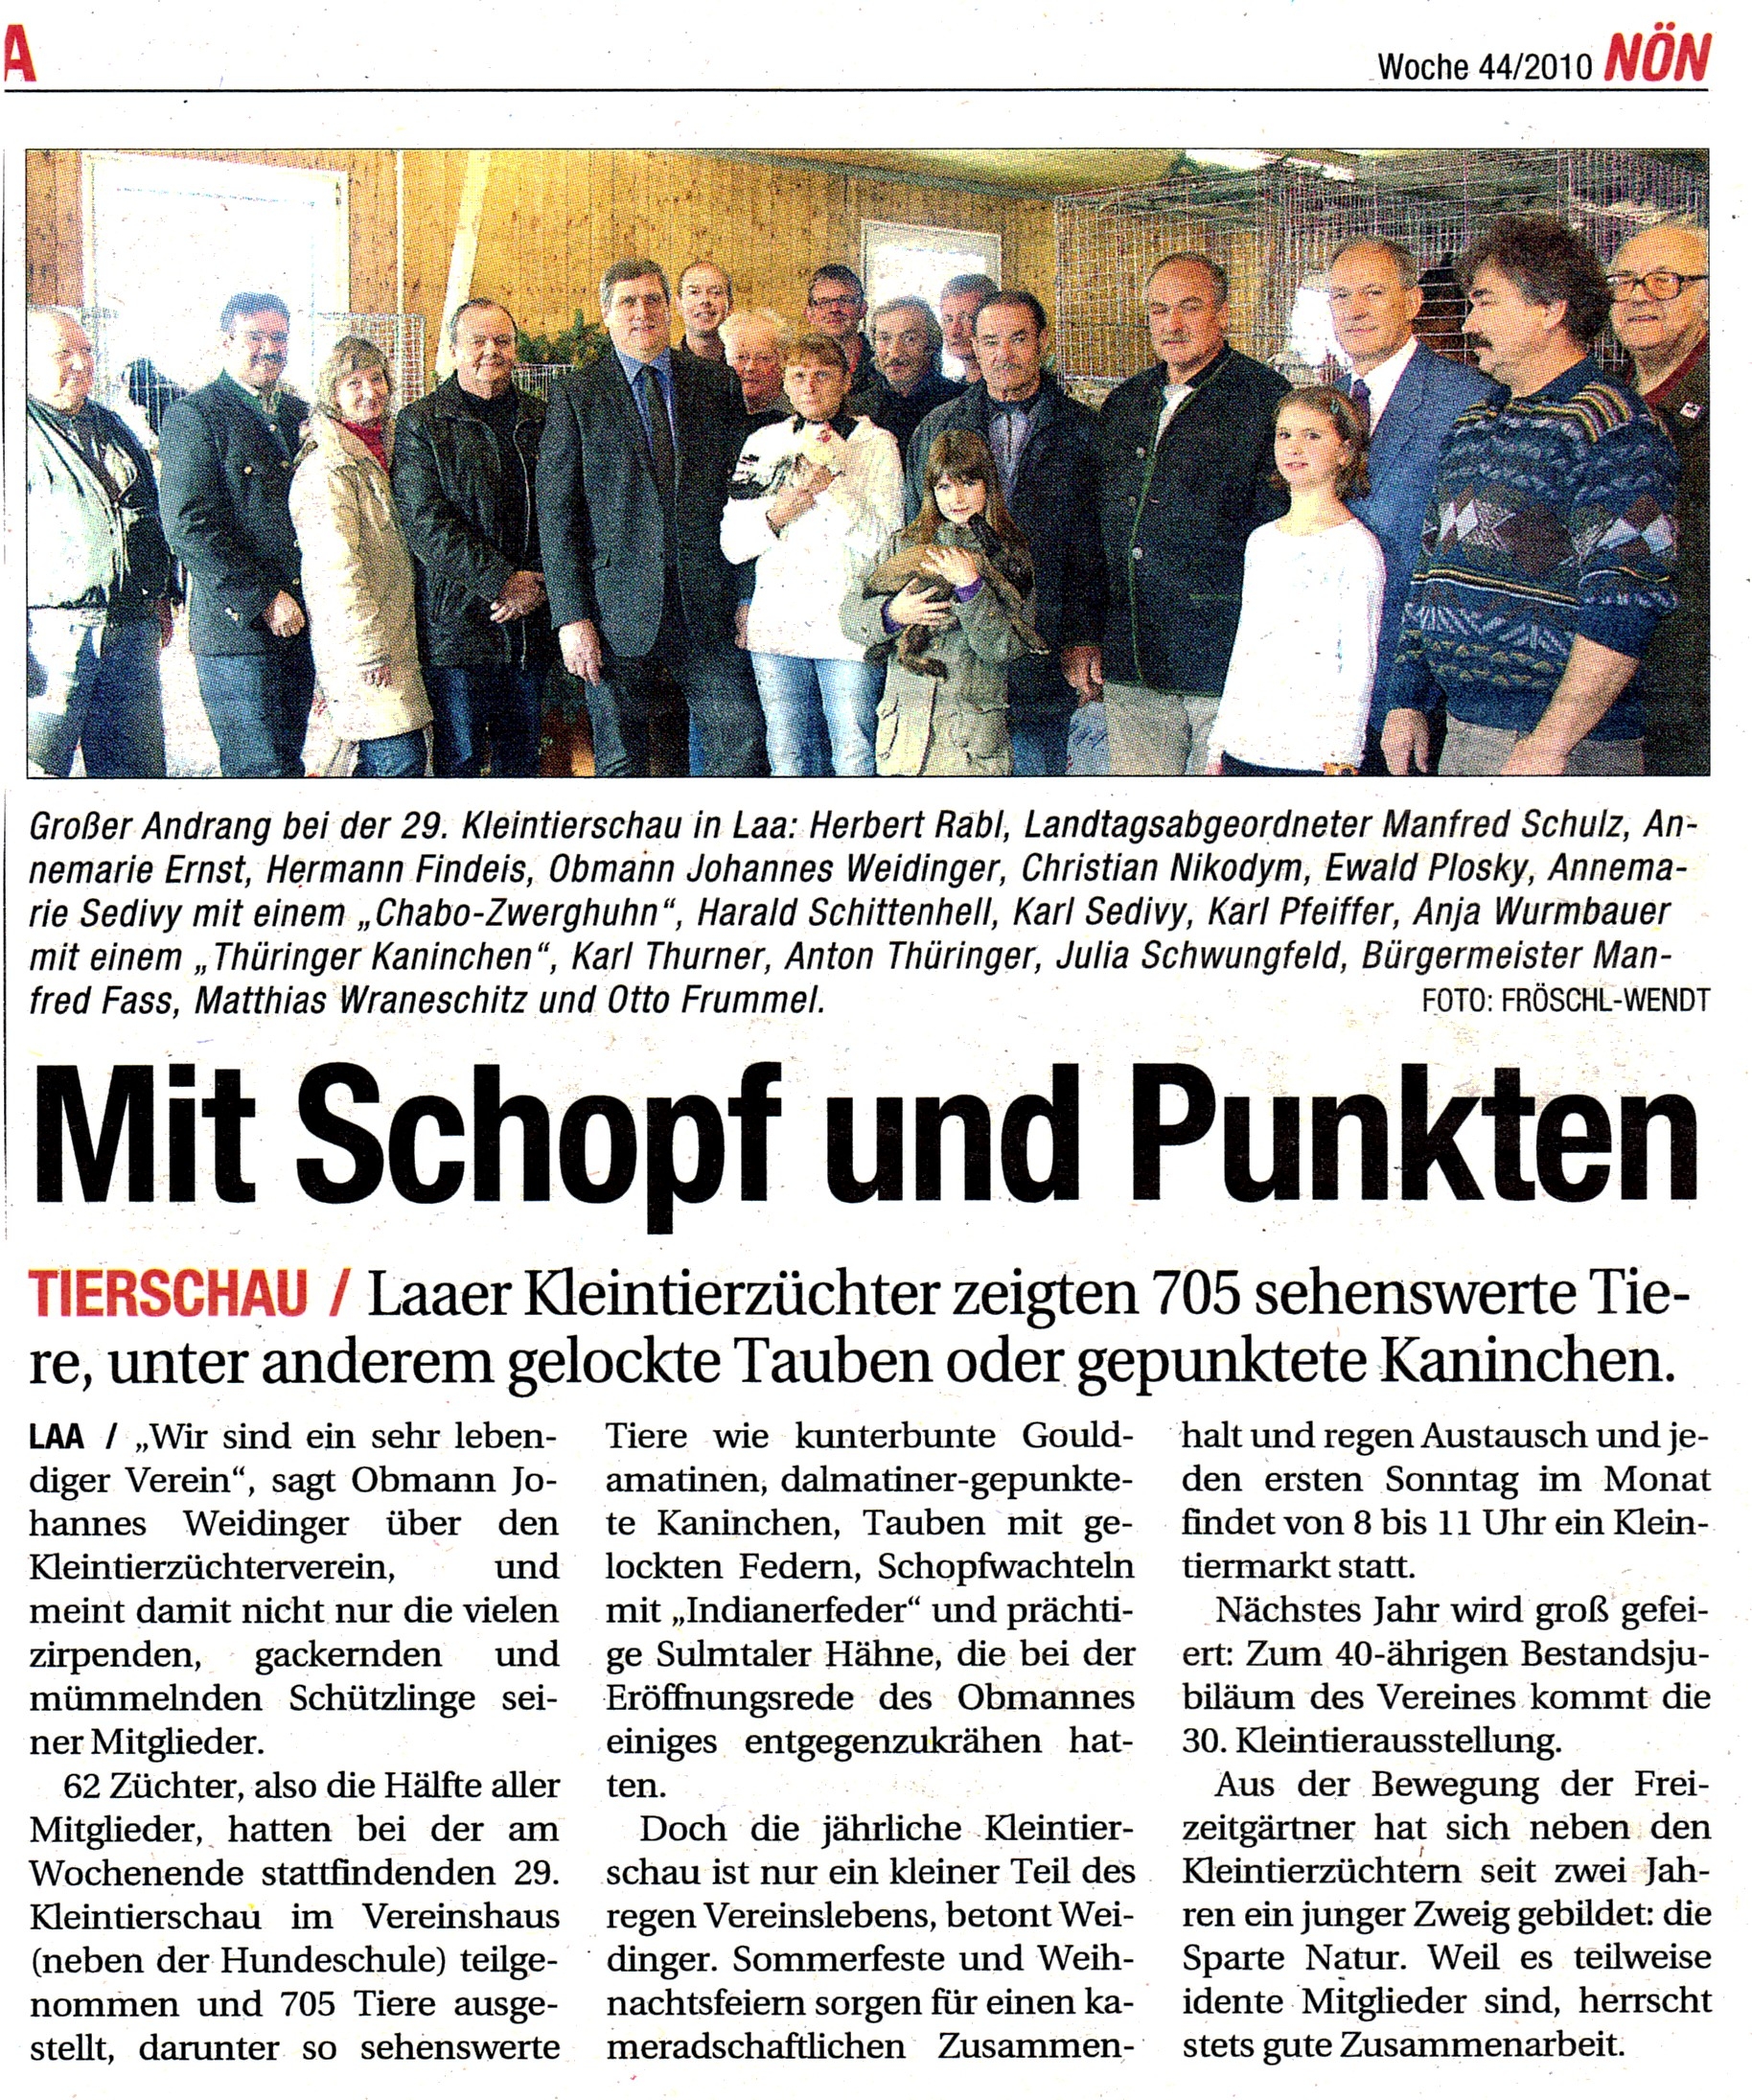 Zeitungsartikel NÖN Woche 44/2010 - Kleintieraustellung